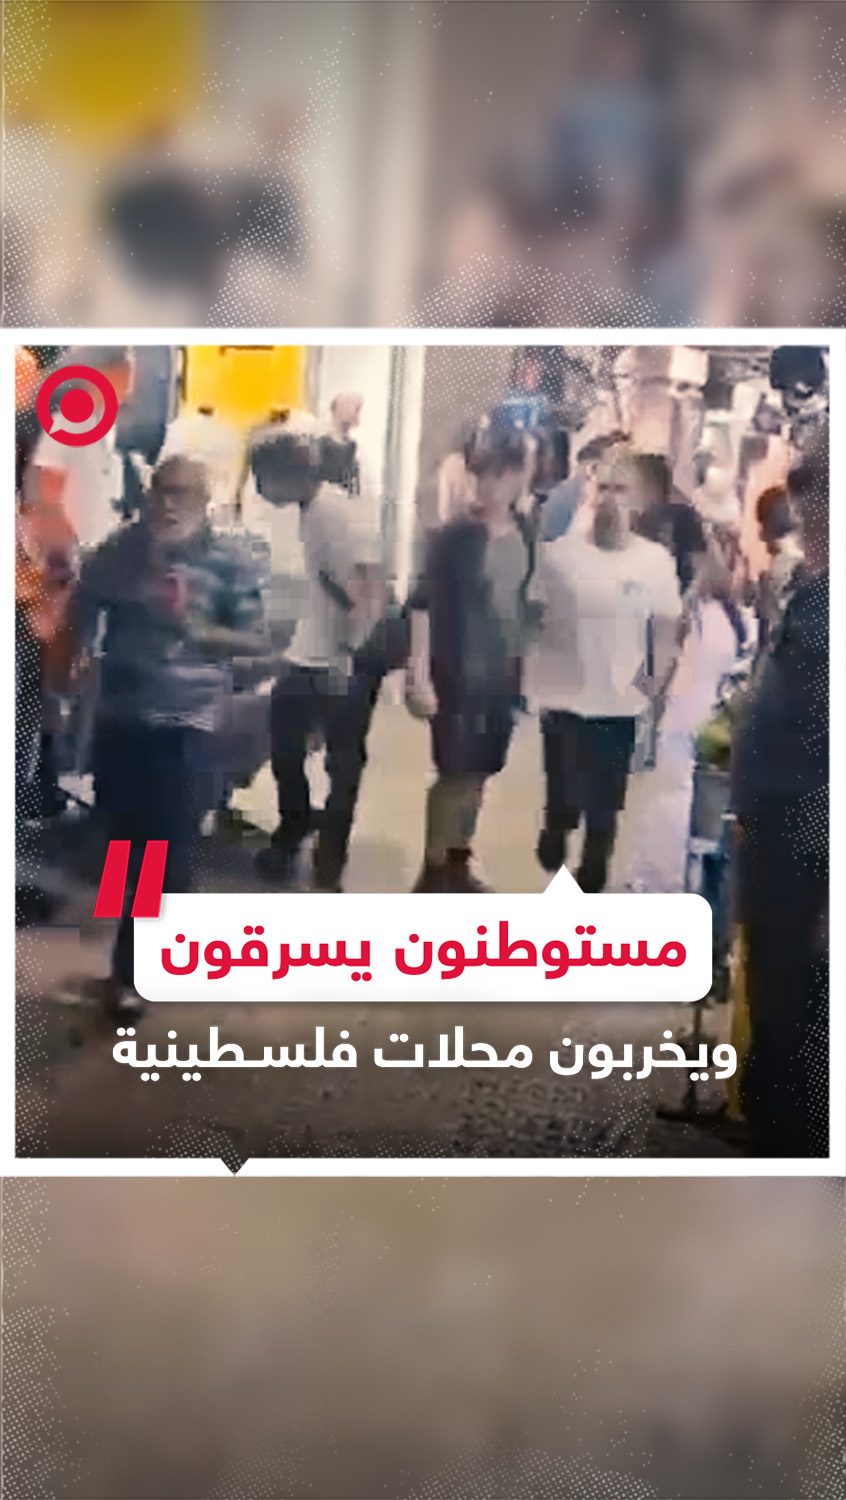 سرقة وتخريب للمحلات الفلسطينية  أثناء "مسيرة الأعلام" الإسرائيلية